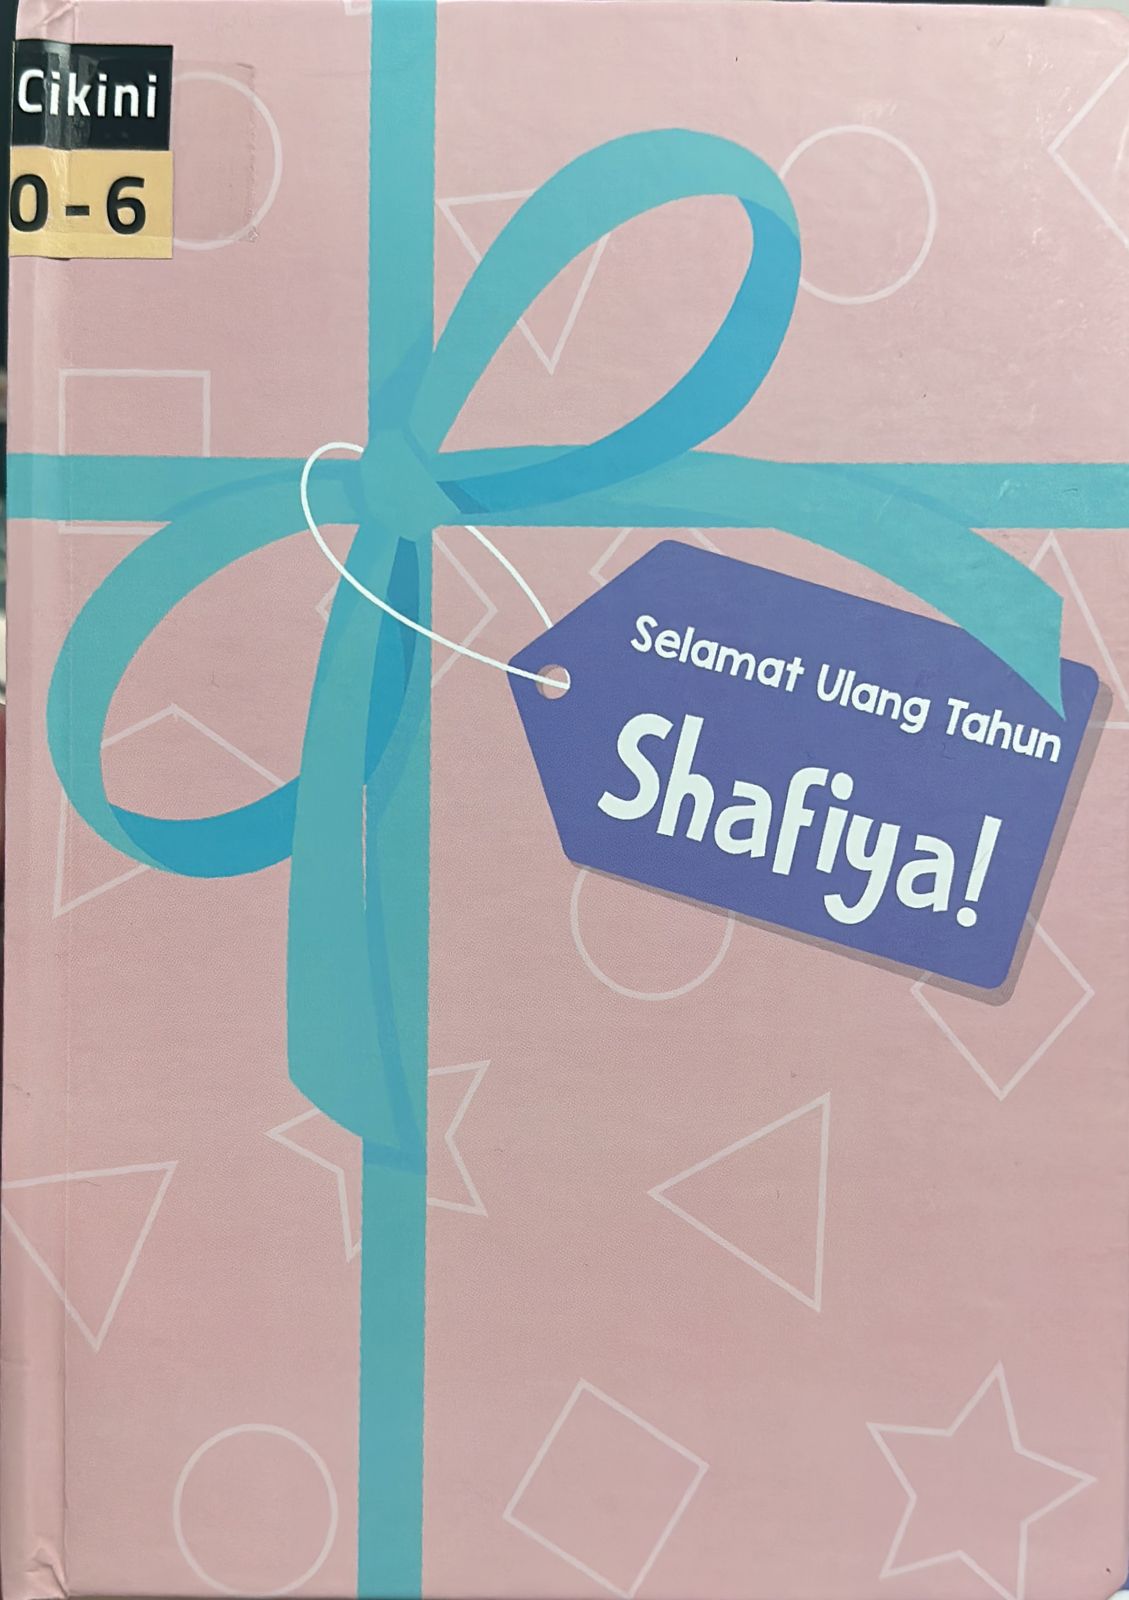 Selamat ulang tahun Shafiya!